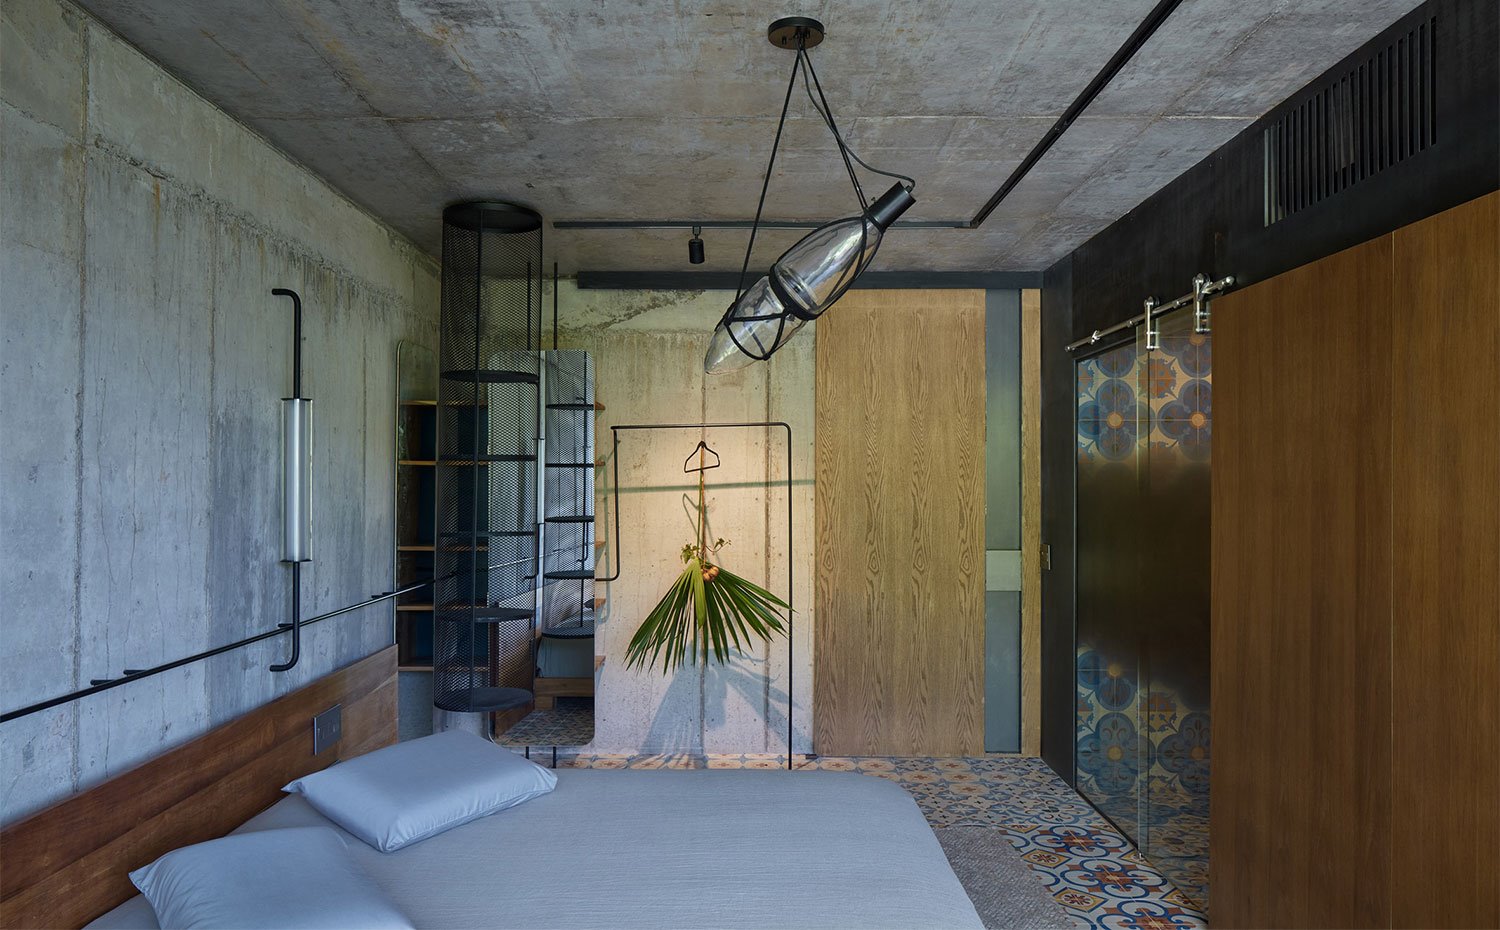 Dormitorio con pared y techo de hormigón, baldosas hidráulicas en el pavimento y armarios y cerramientos en madera, cristal y estantes metalizados